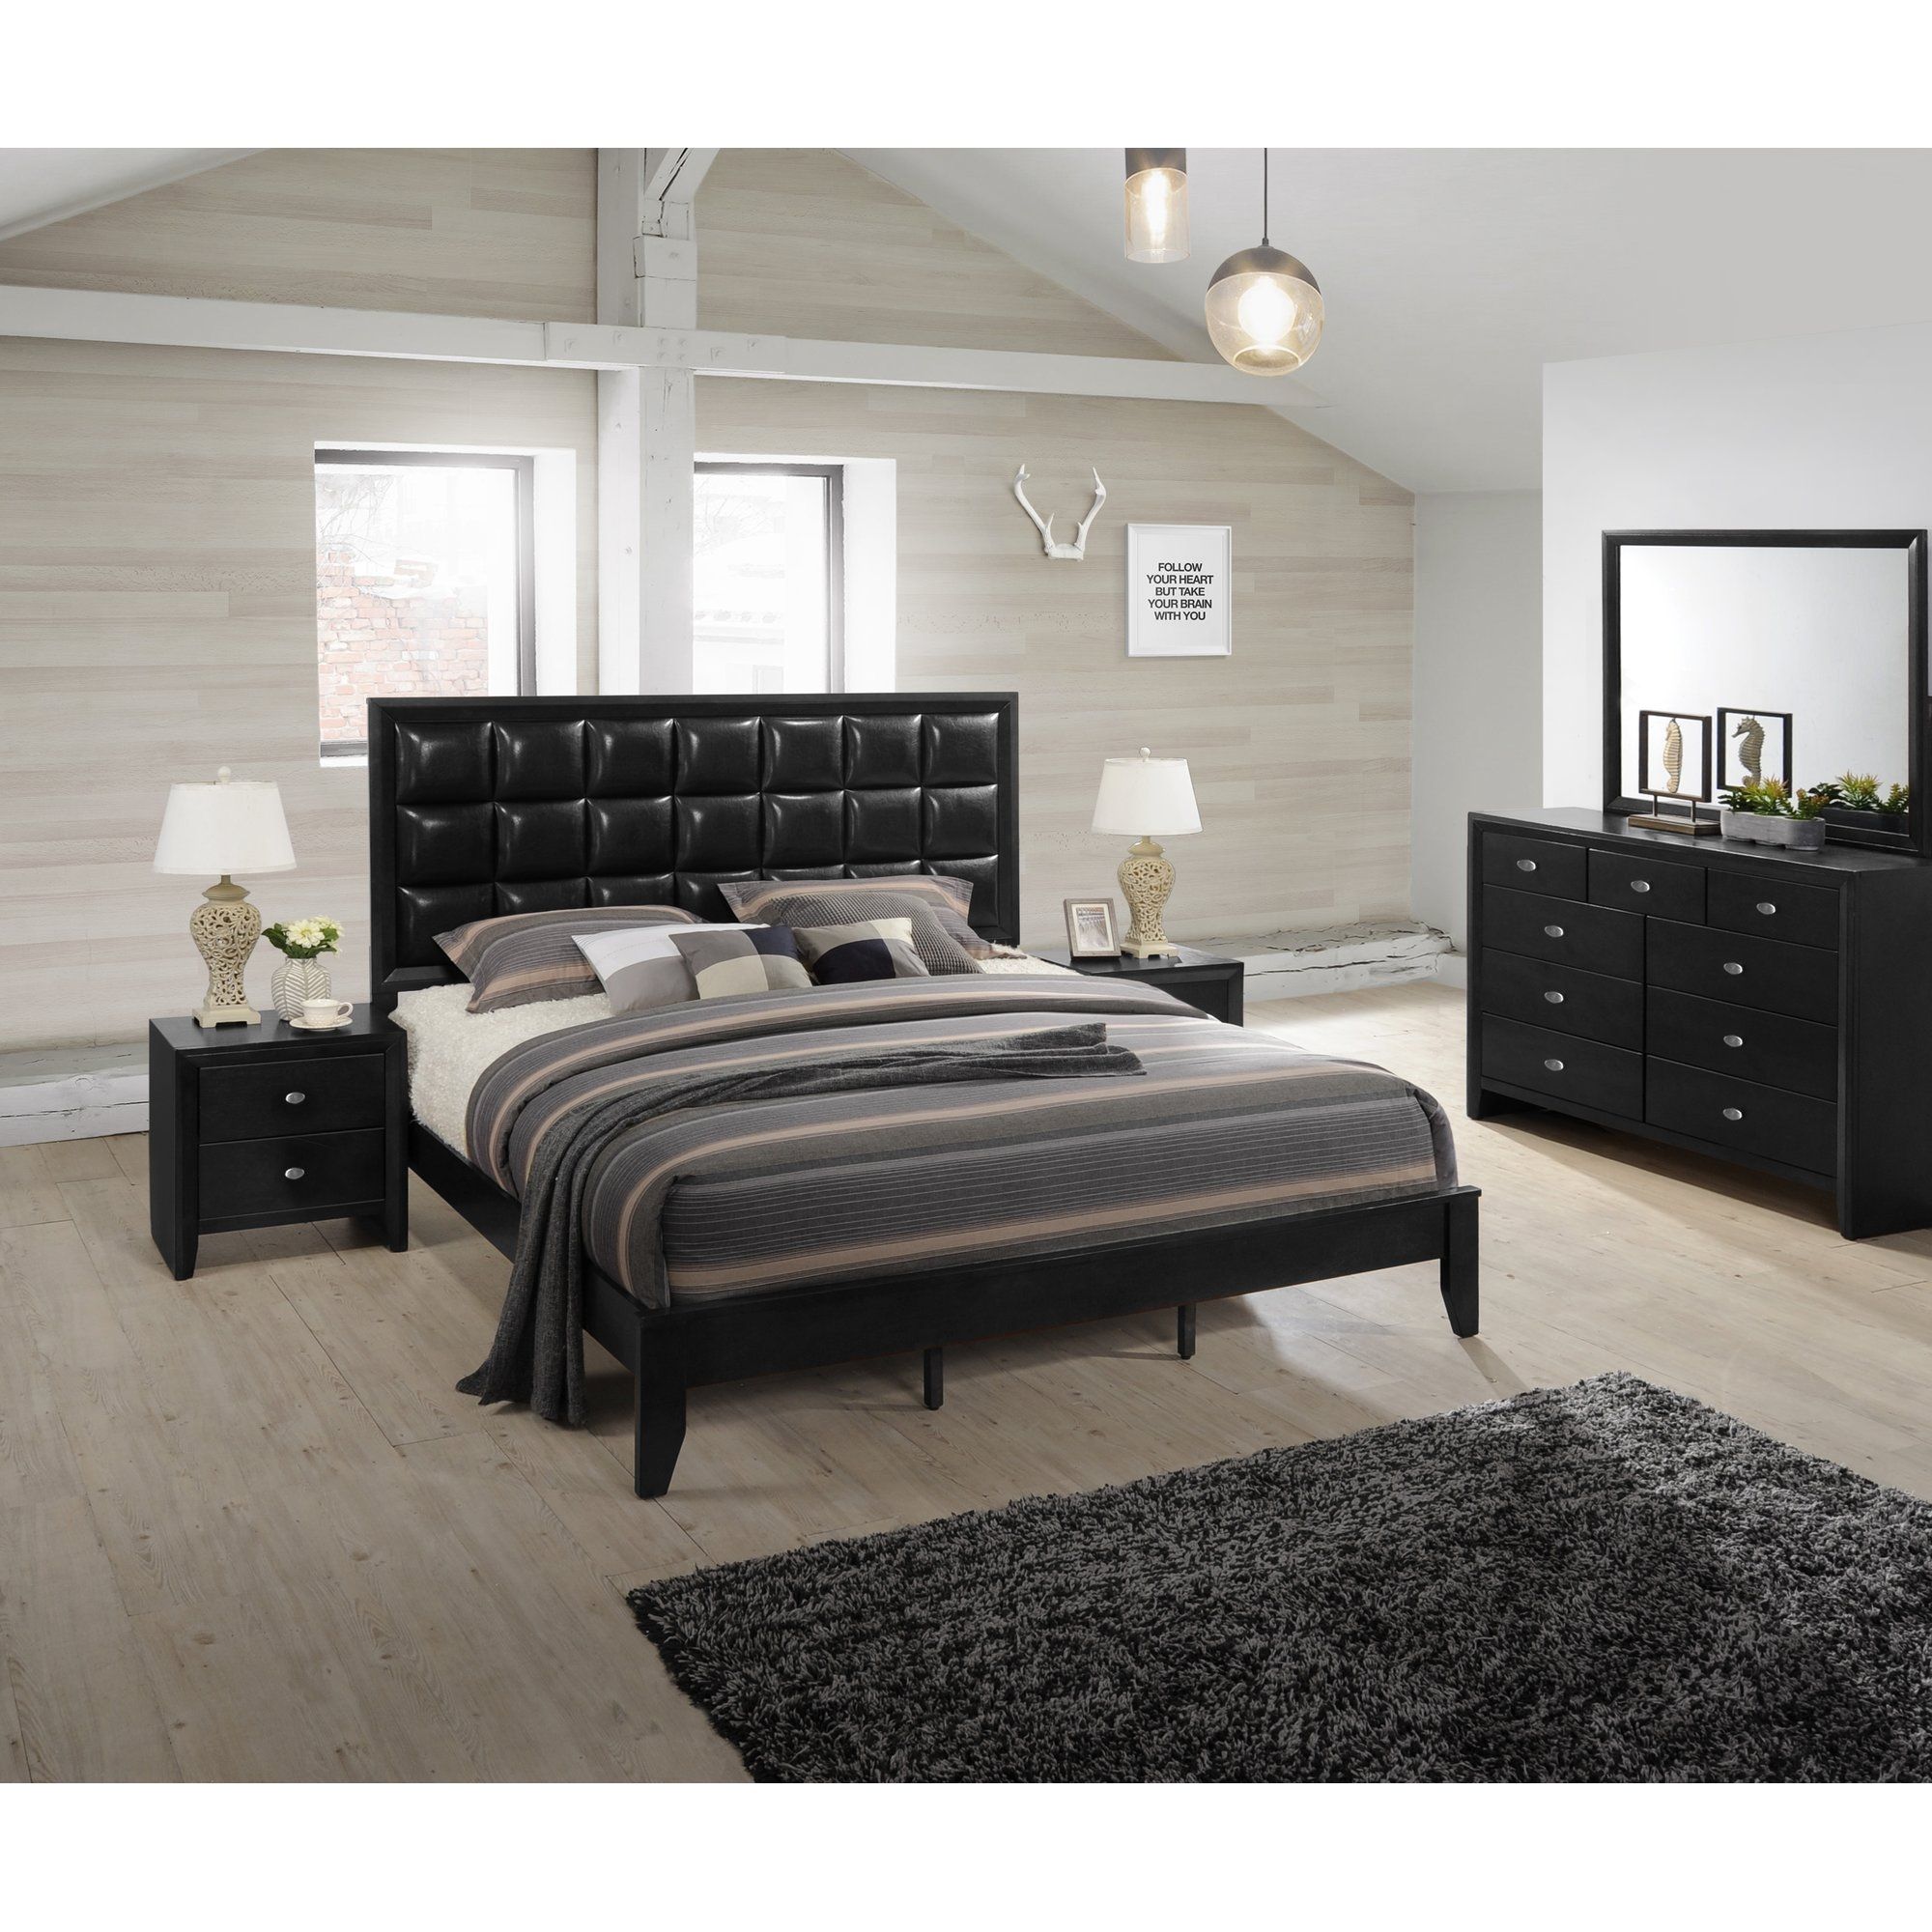 Cheap Bedroom Furniture Sets Under $500